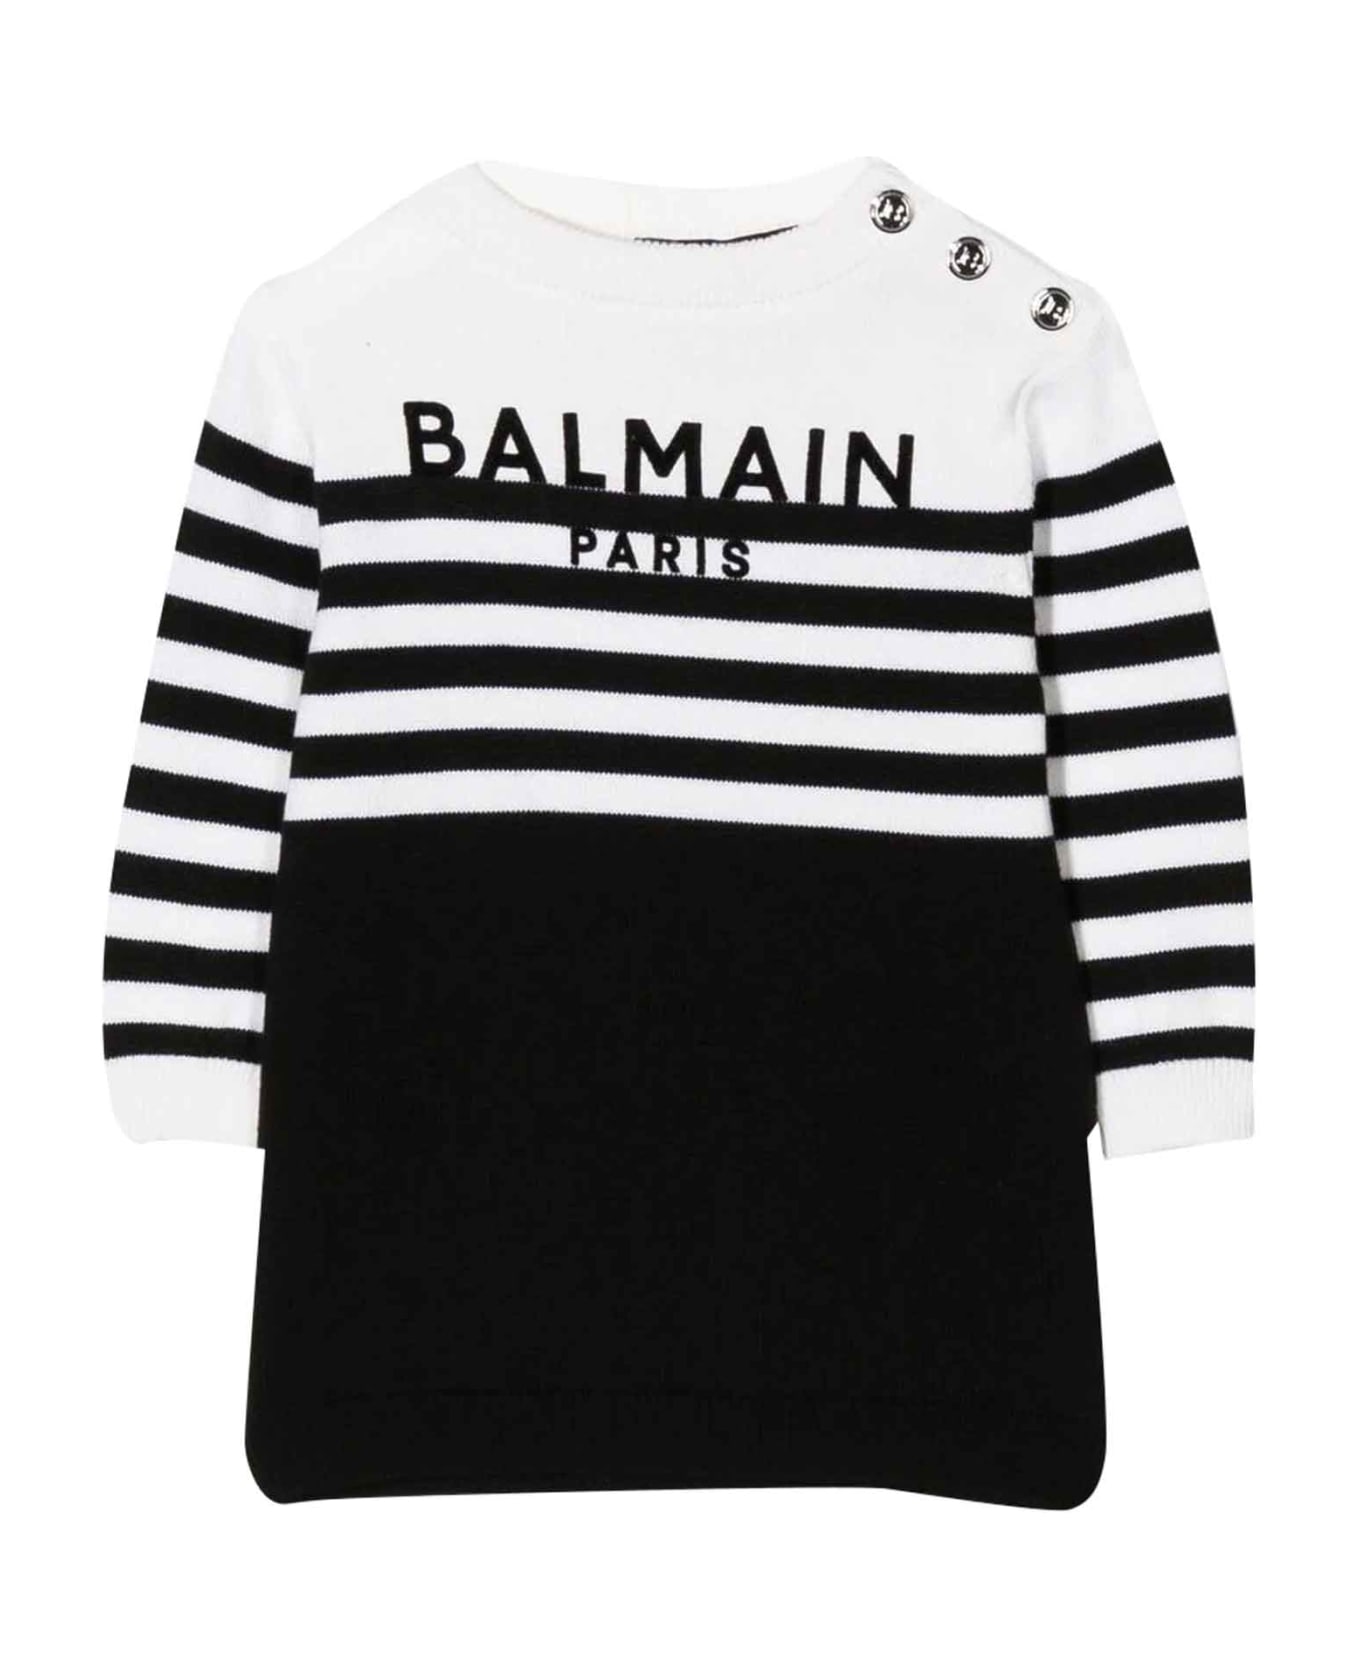 Balmain Black Dress Baby Girl - Bianco/nero